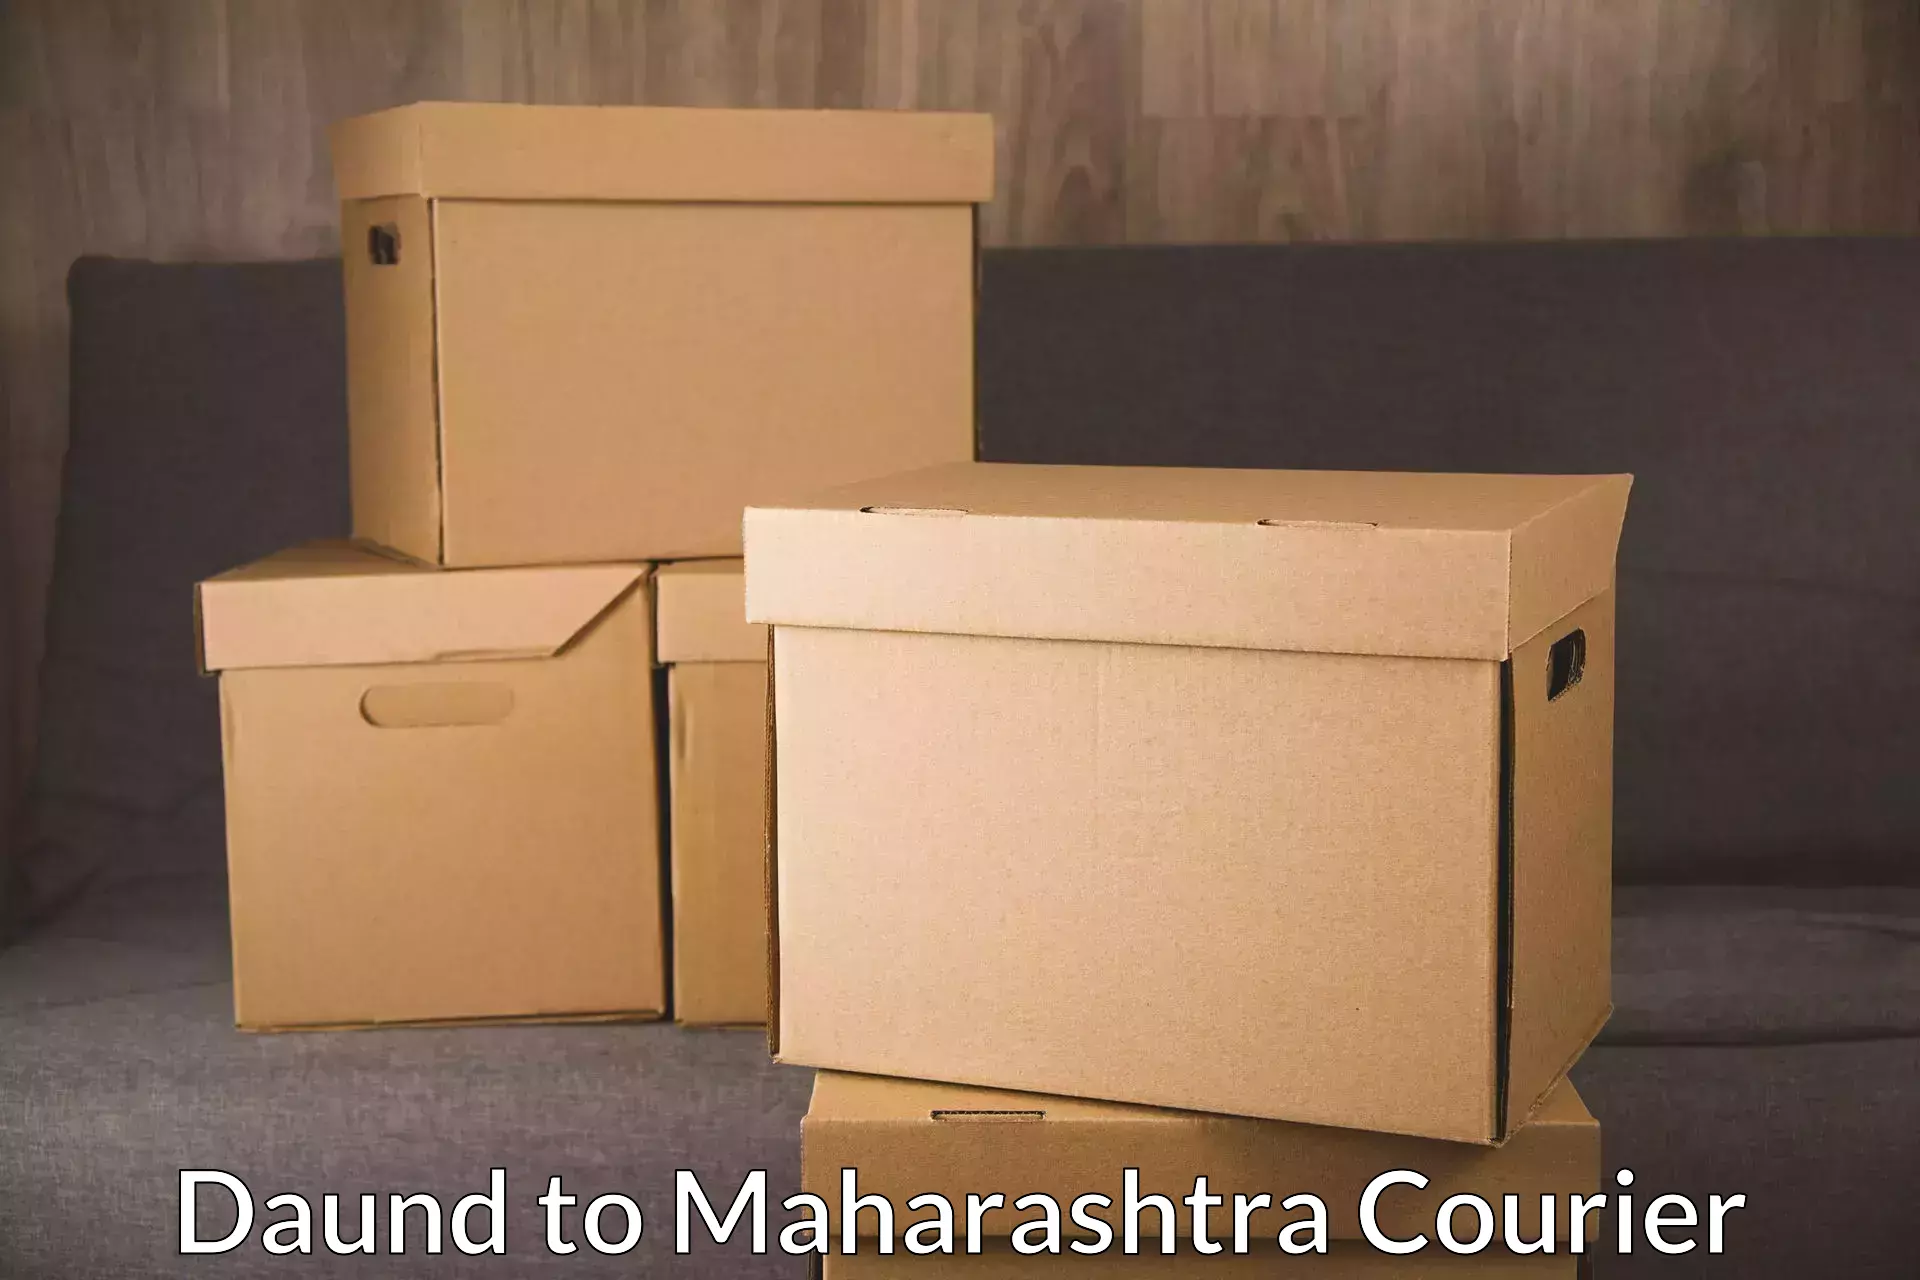 Expedited shipping methods Daund to Maharashtra